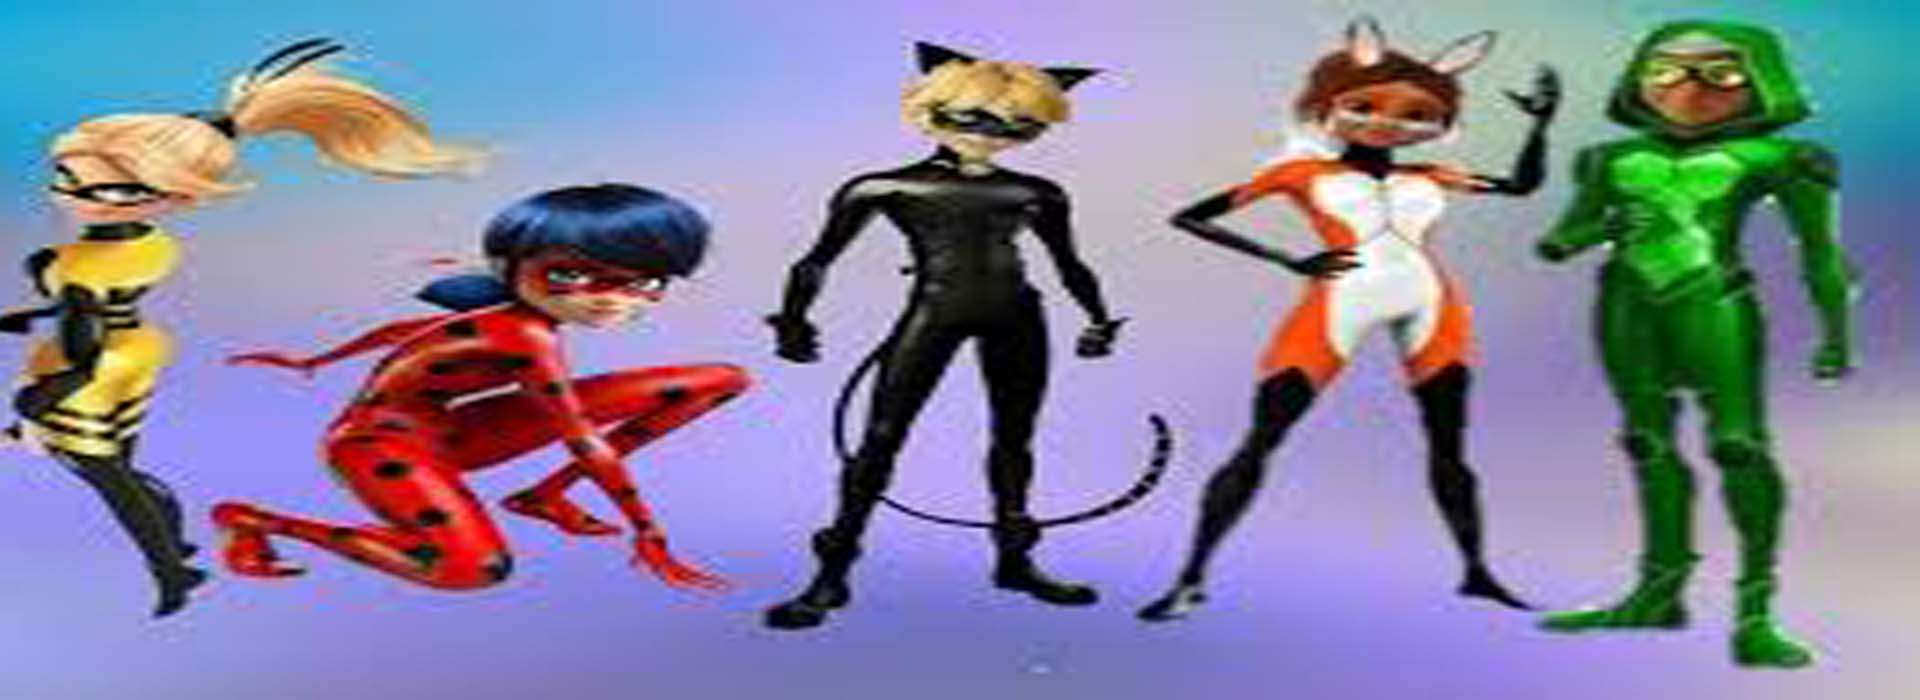 Slider d'images de l'animation LadyBug